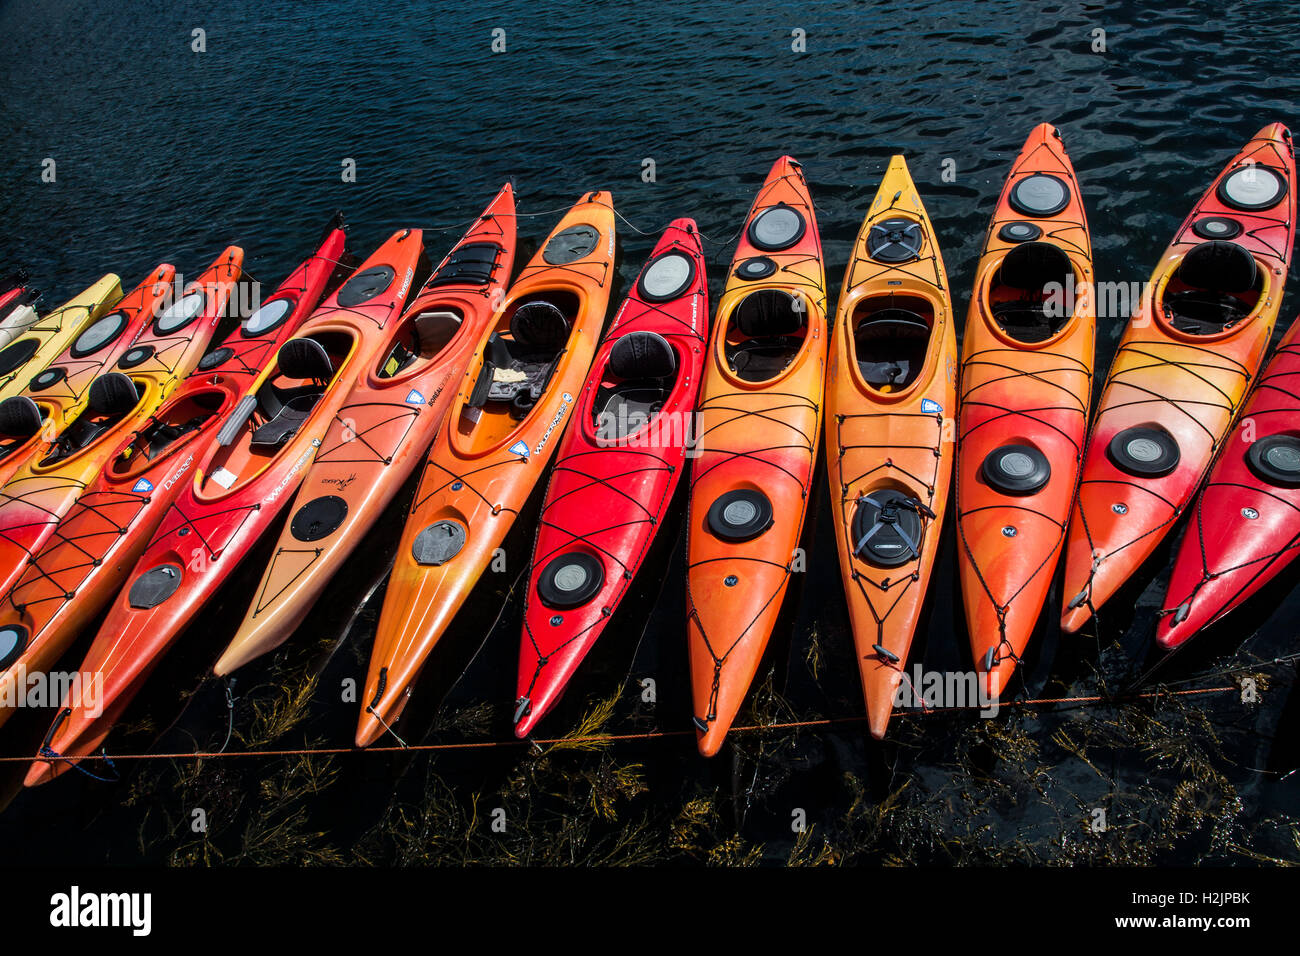 Close up colorful abstract pattern d'une rangée de kayaks, Rockport, Massachusetts, États-Unis d'Amérique, l'Angleterre, l'Amérique, fichier sz 11.05Mo compressé, 300dpi Banque D'Images